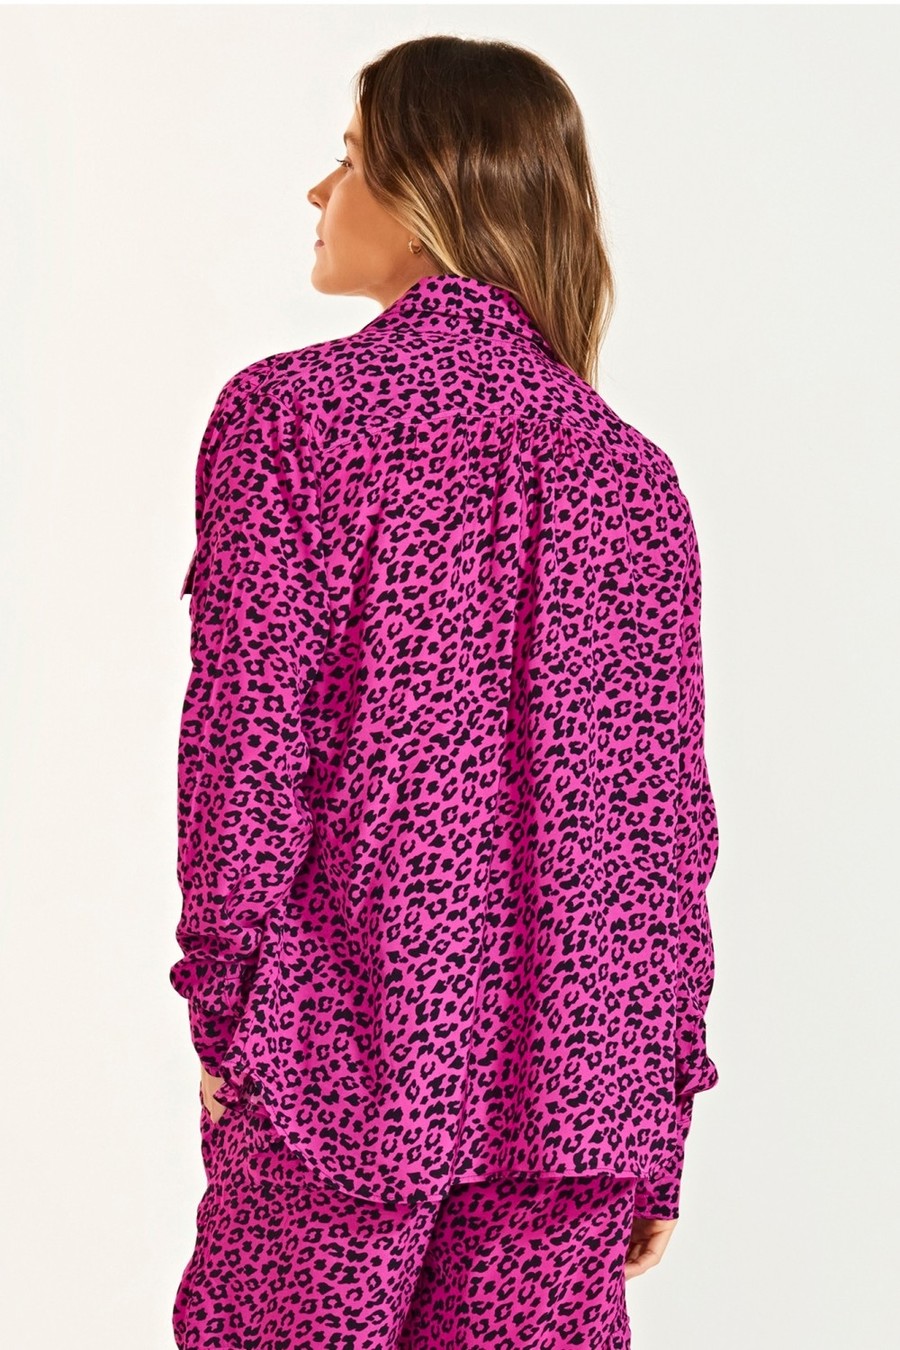 camisa leopardo rosa CM18 triya